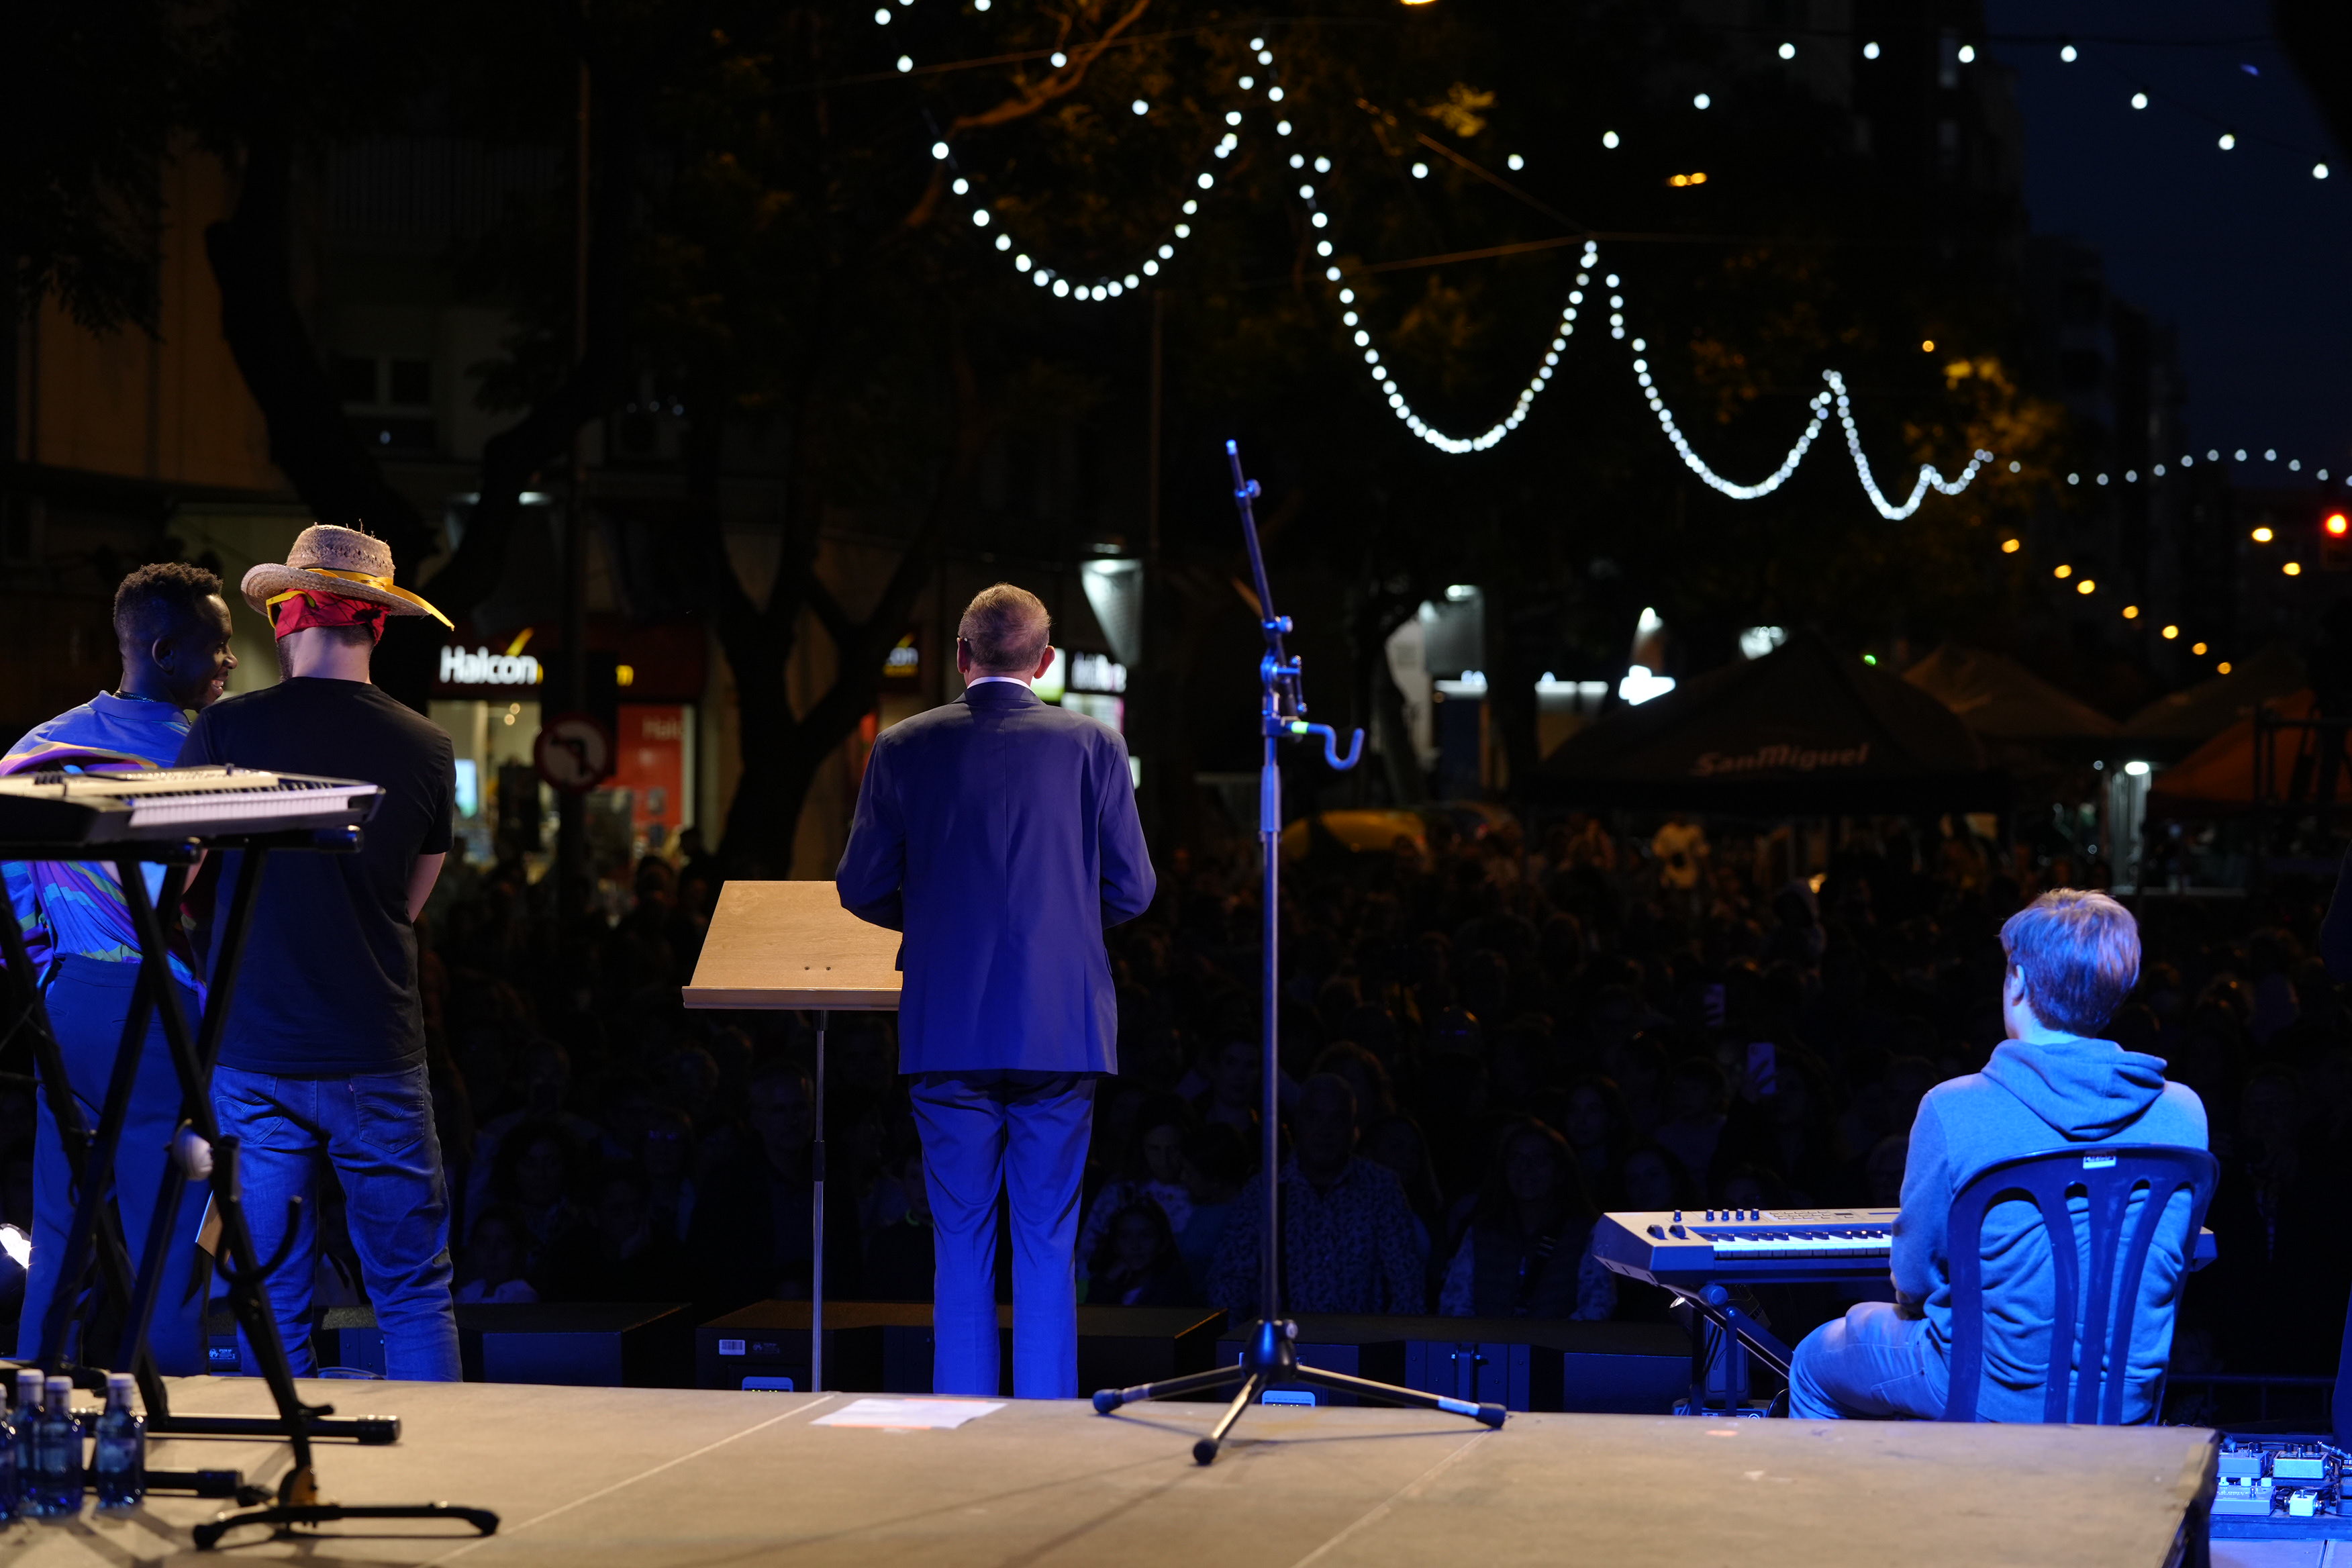 El pregó de les Festes de la Tardor 2022 ha tingut lloc a l'escenari dels concerts i revetlles, a l'avinguda Rovira Roure.